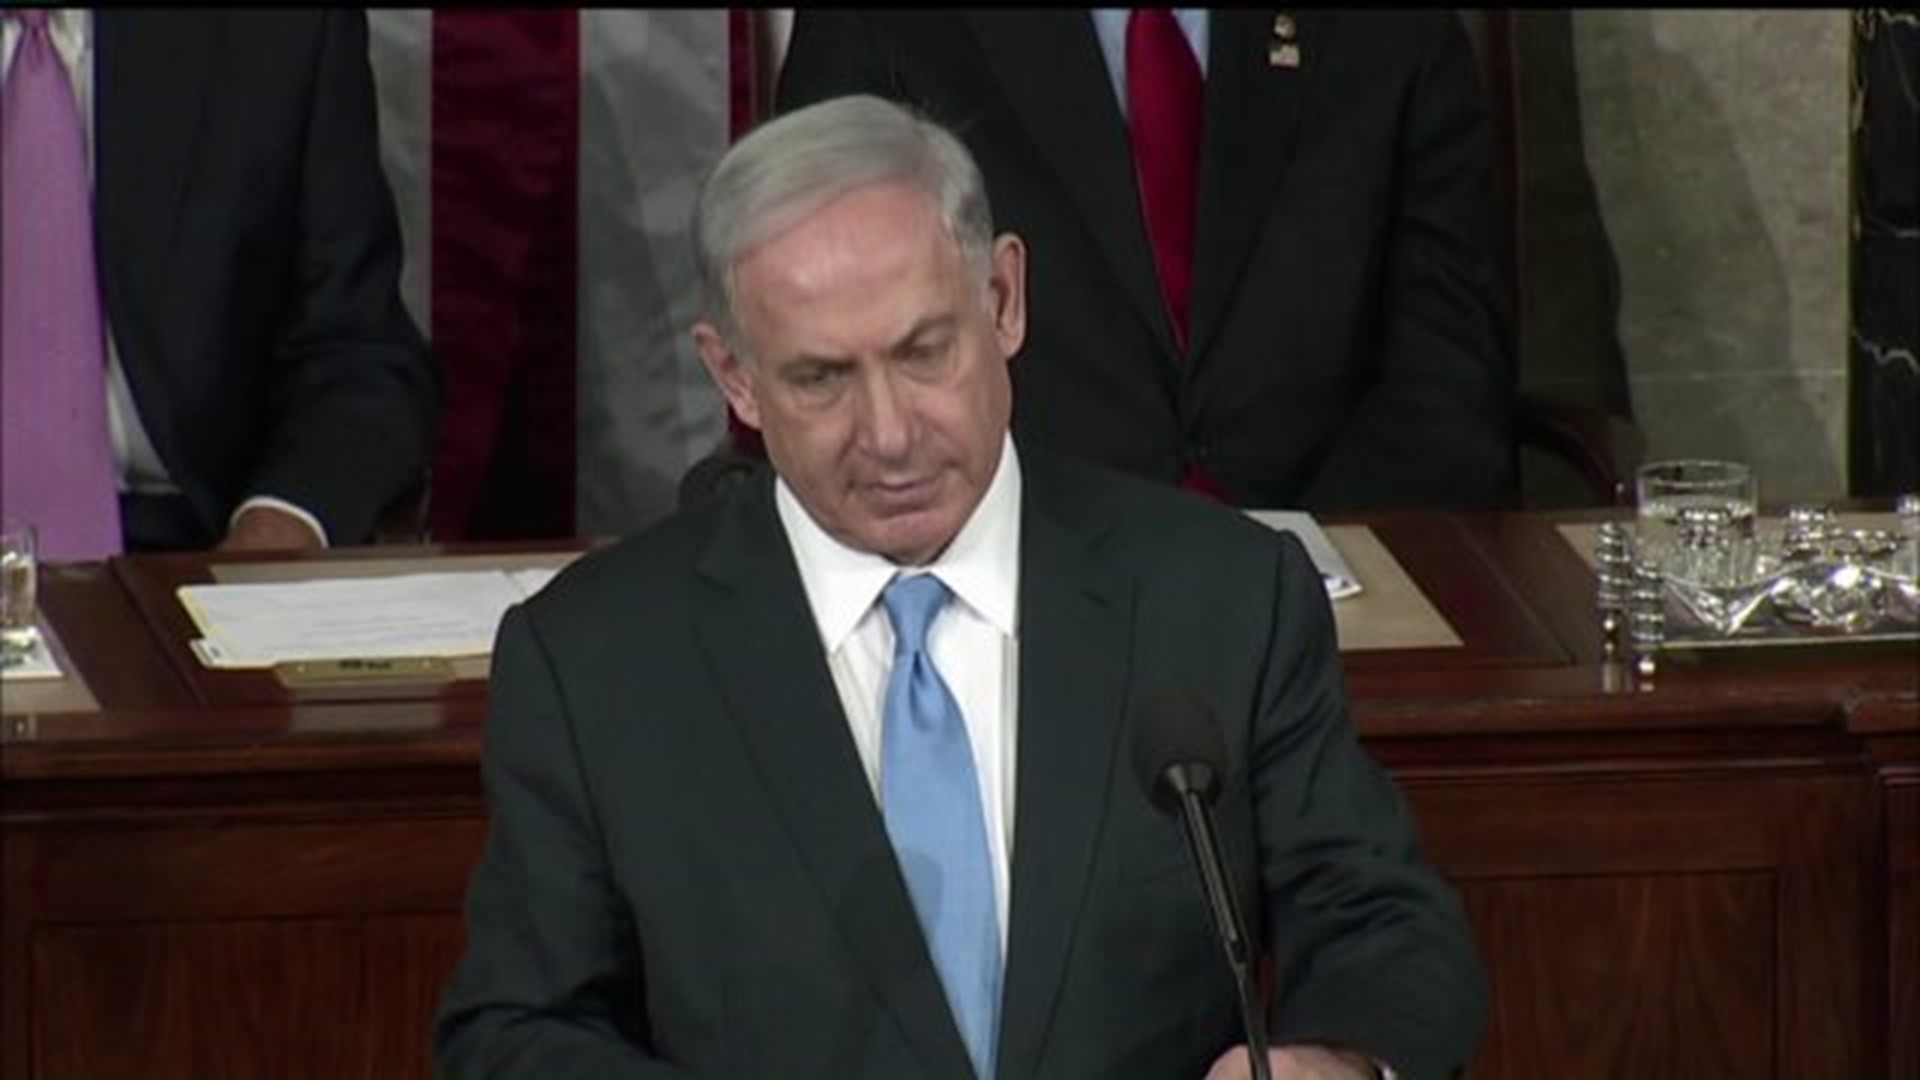 Local Politicians react to Netanyahu speech